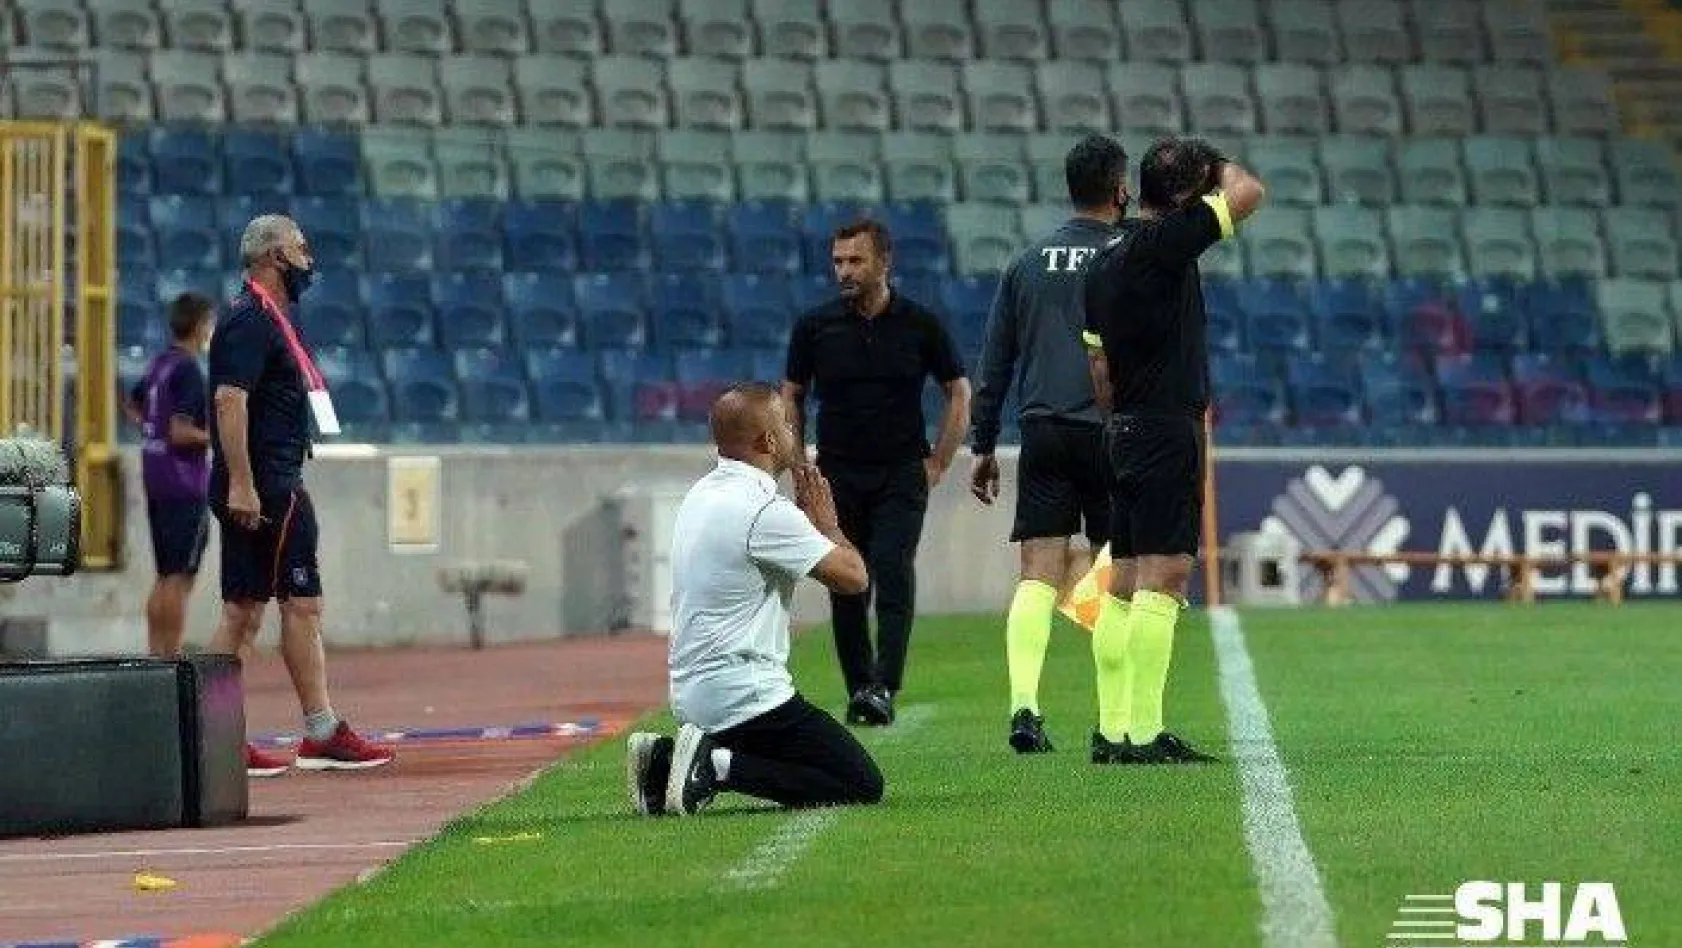 Süper Lig: Medipol Başakşehir: 2 - Denizlispor: 0 (Maç sonucu)